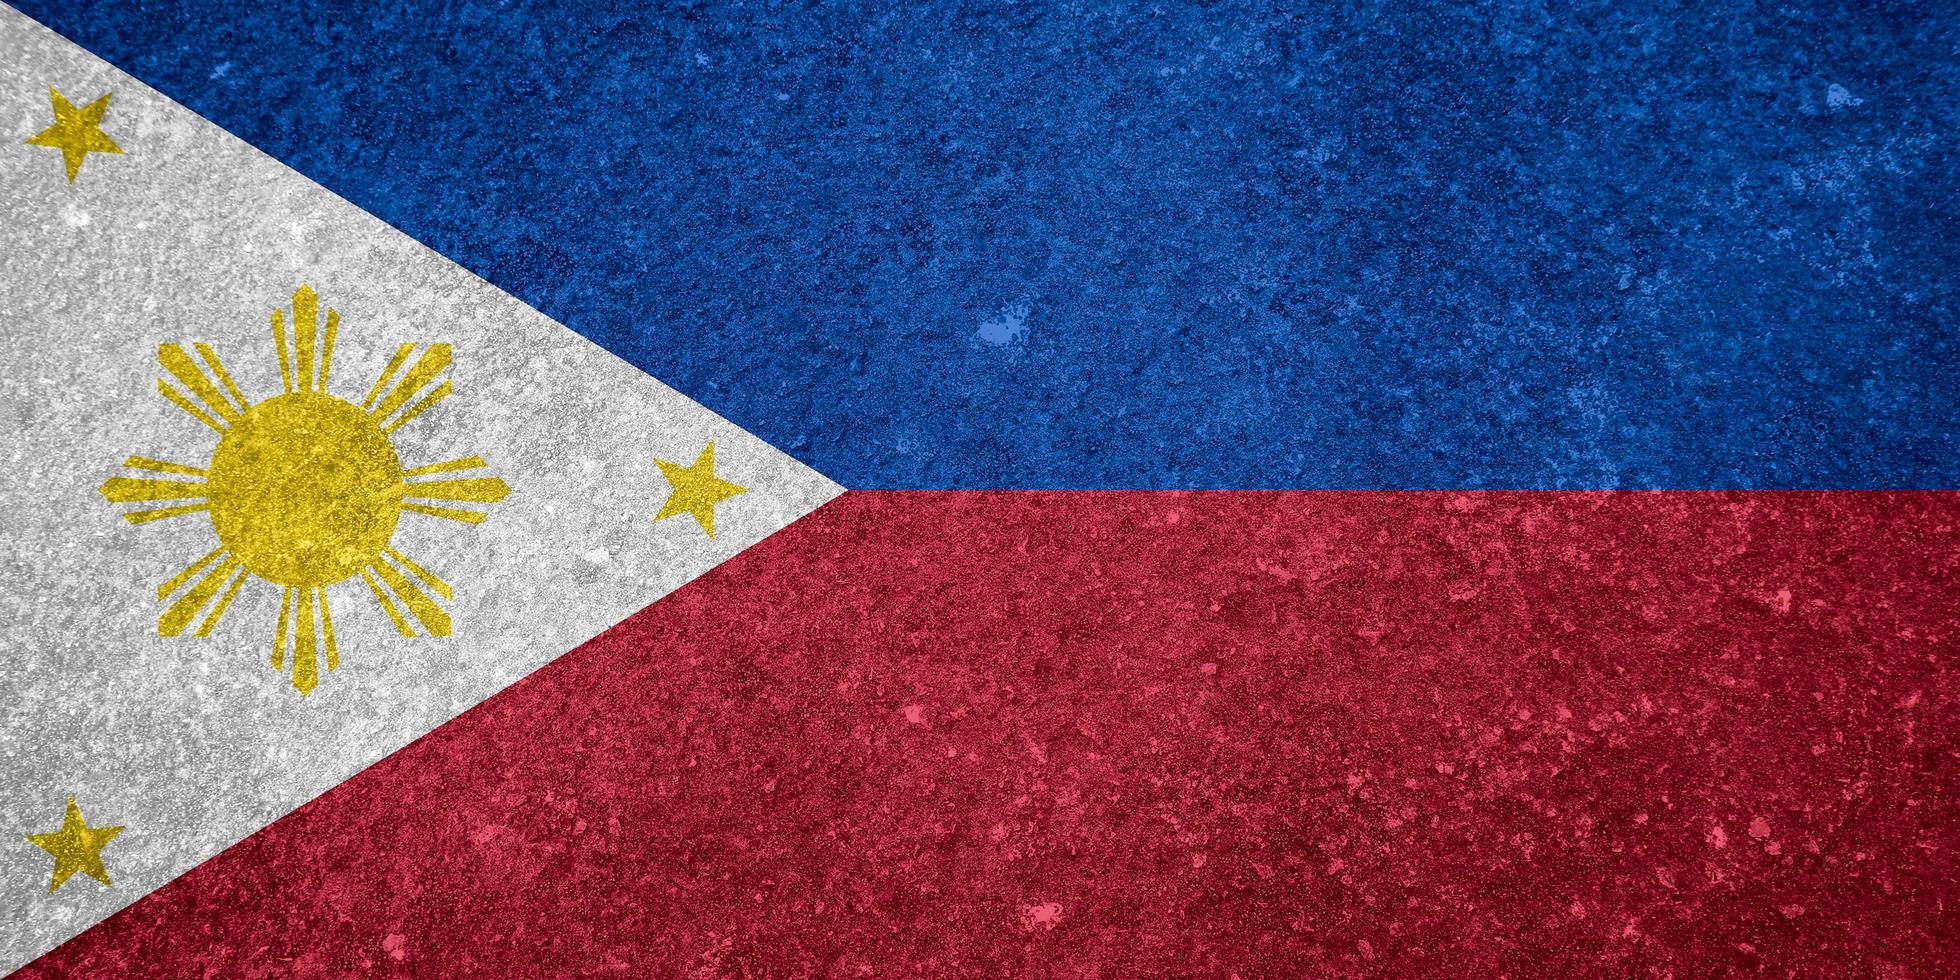 filippinerna flagga textur som bakgrund foto